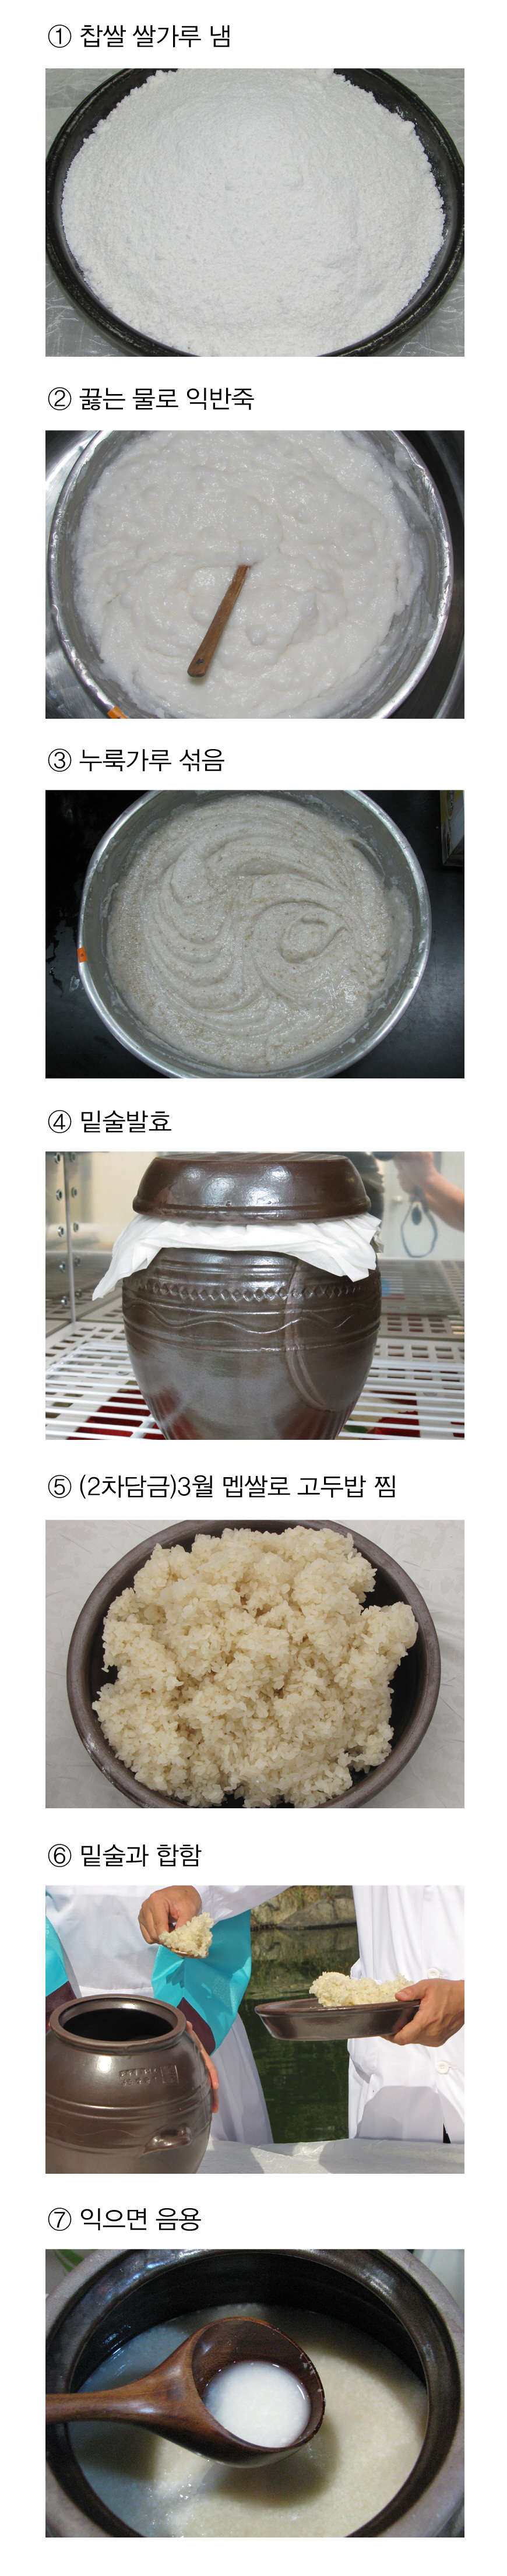 예주 > 수운잡방(의역) 1 전통주 담그는법